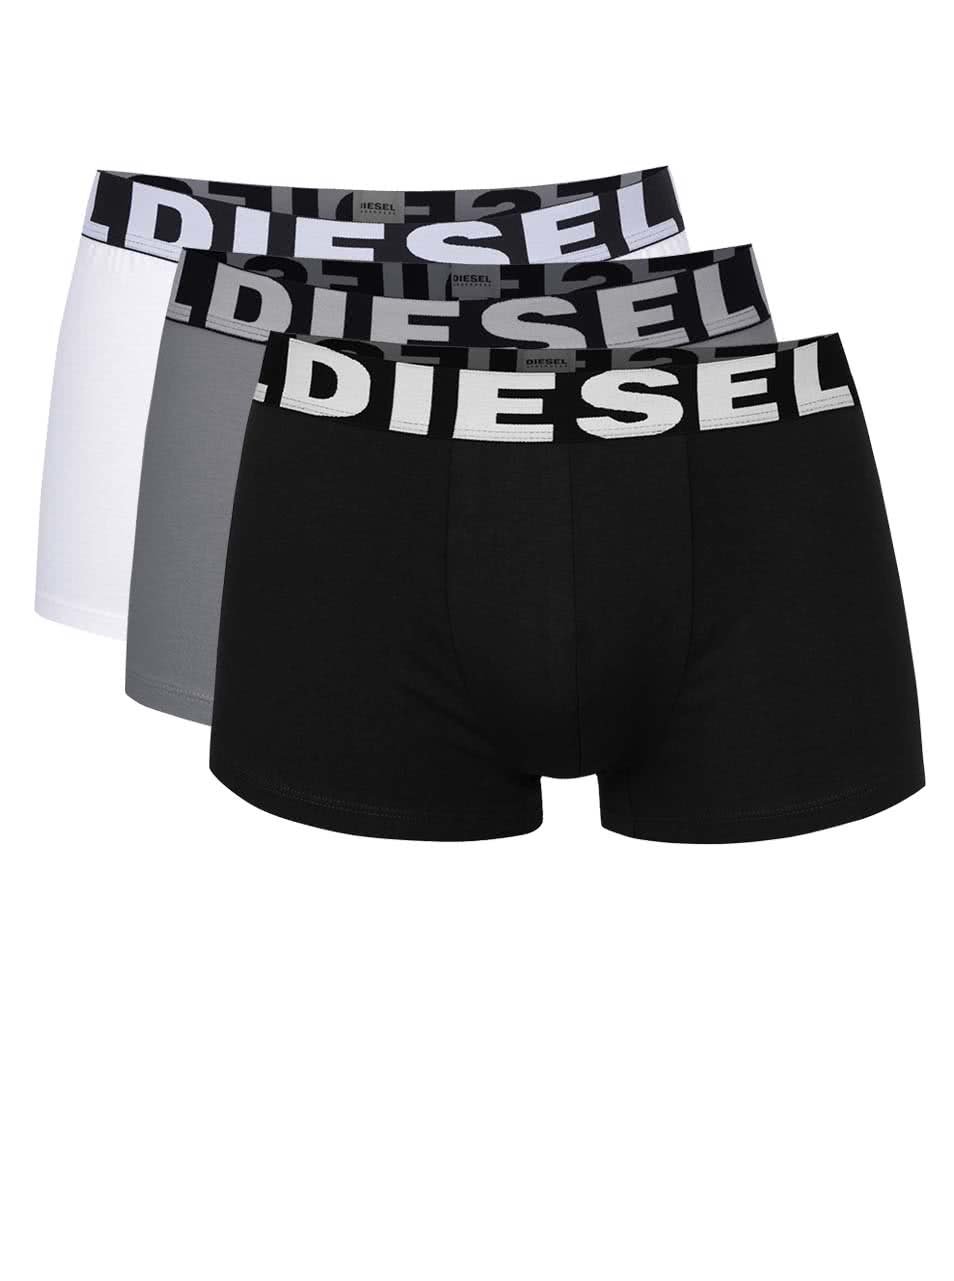 Sada tří boxerek v šedé, bílé a černé barvě Diesel